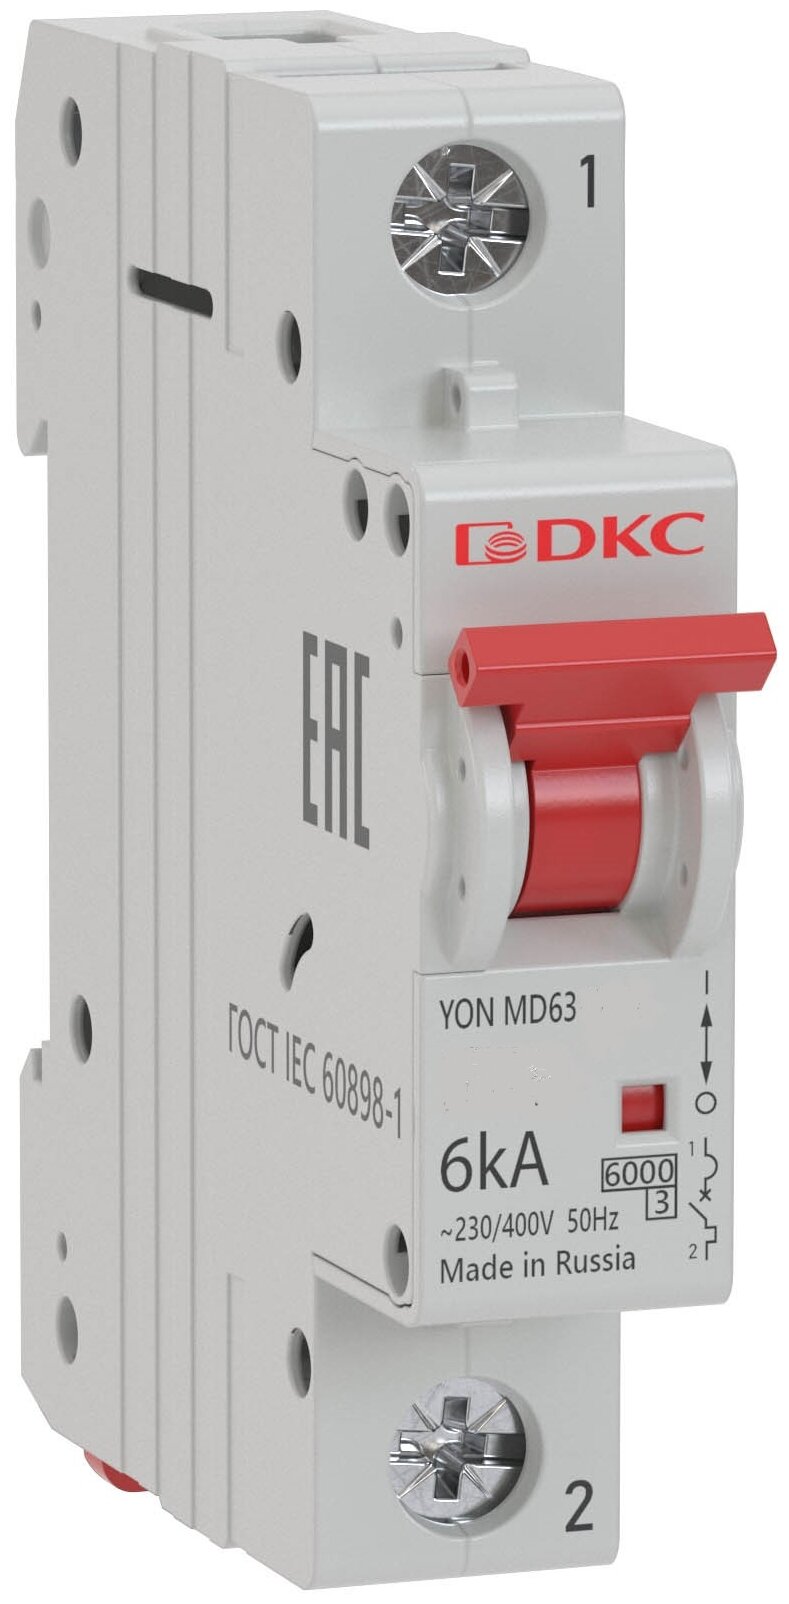 Выключатель автоматический модульный YON 6kA | код MD63-1C6-6 | DKC ( 1шт. )